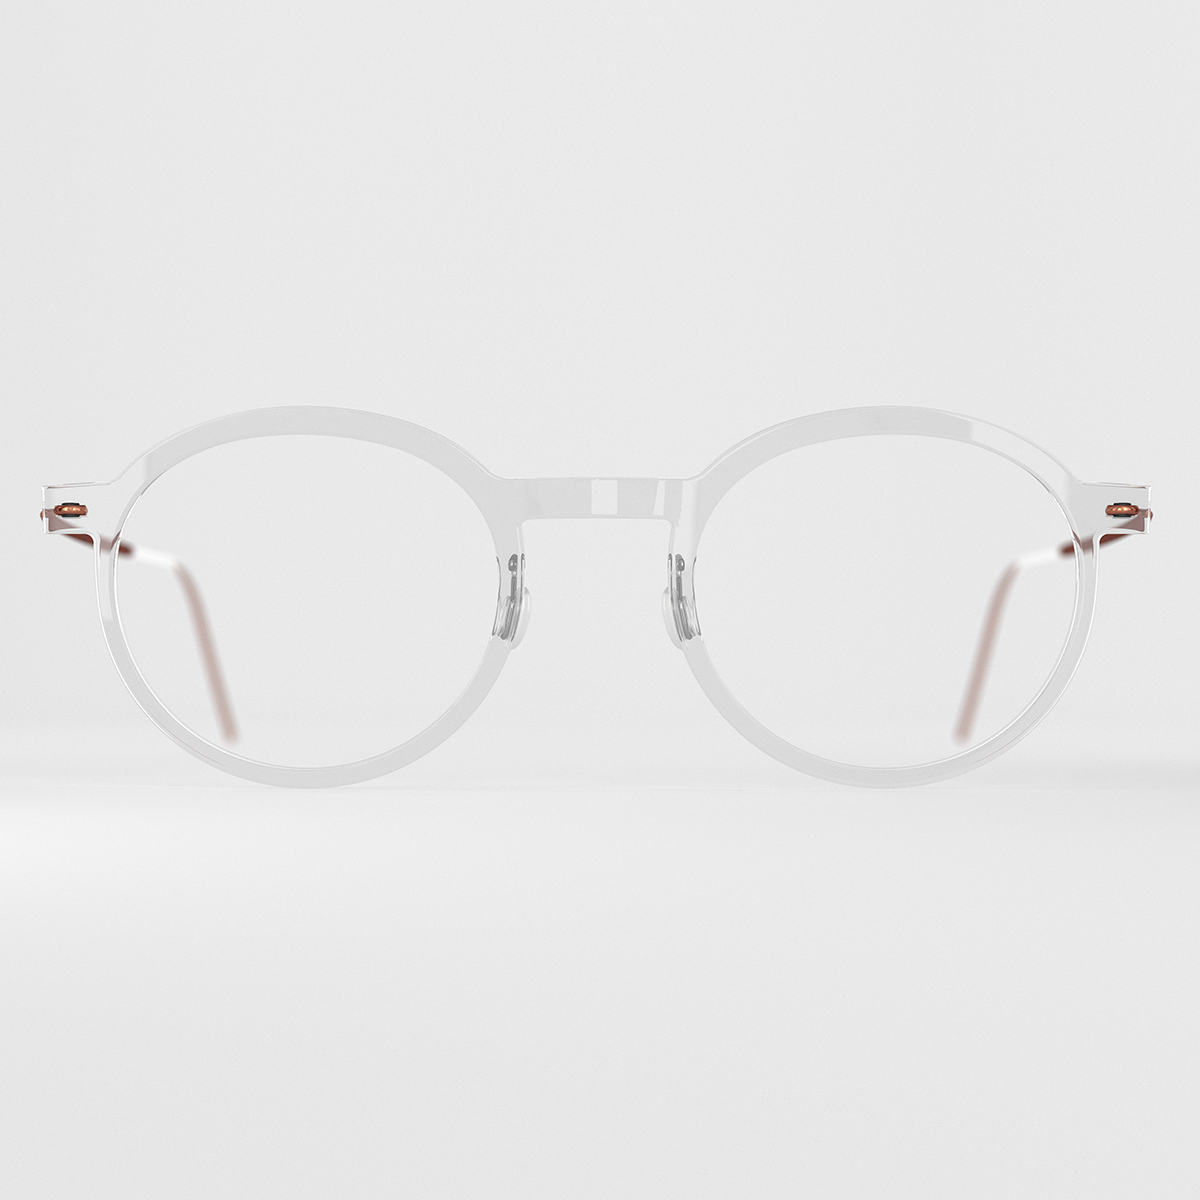 LINDBERG acetanium, Modell 6586, transparente Brille in runder Panto-Form mit braunen Titanbügeln